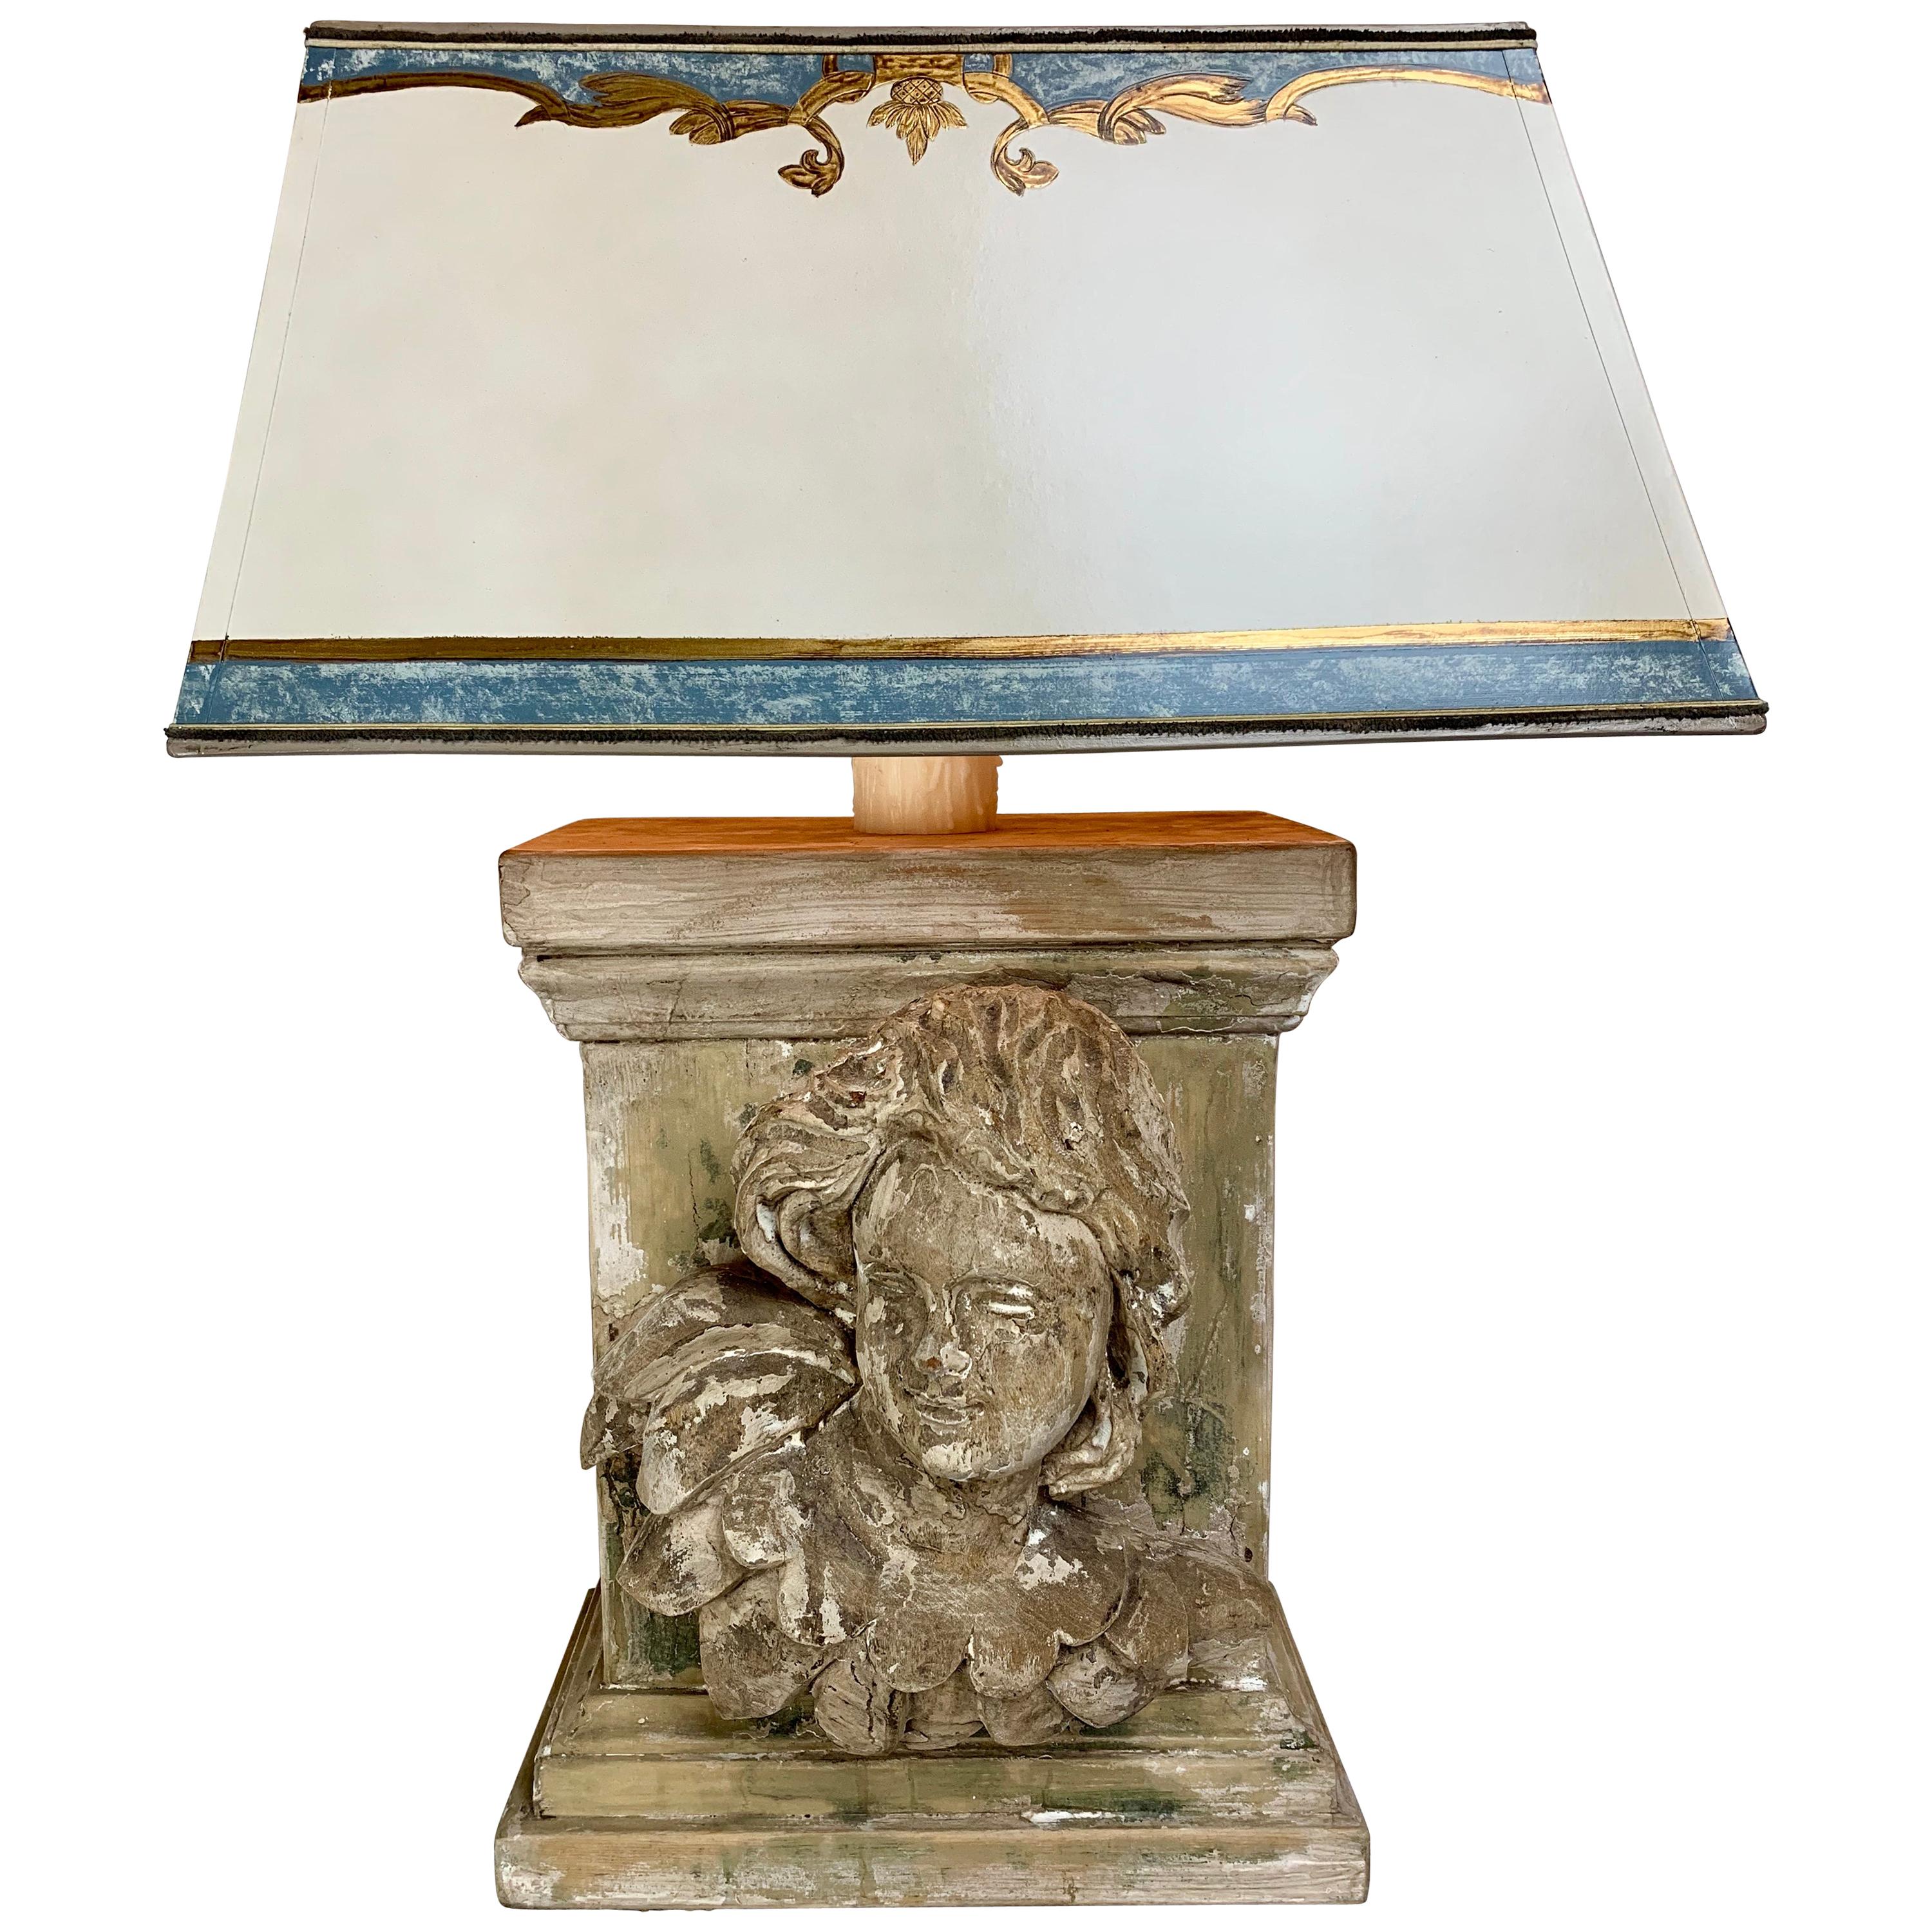 Lampe du XIXe siècle avec visage de chérubin sculptée et abat-jour parchemin sur mesure